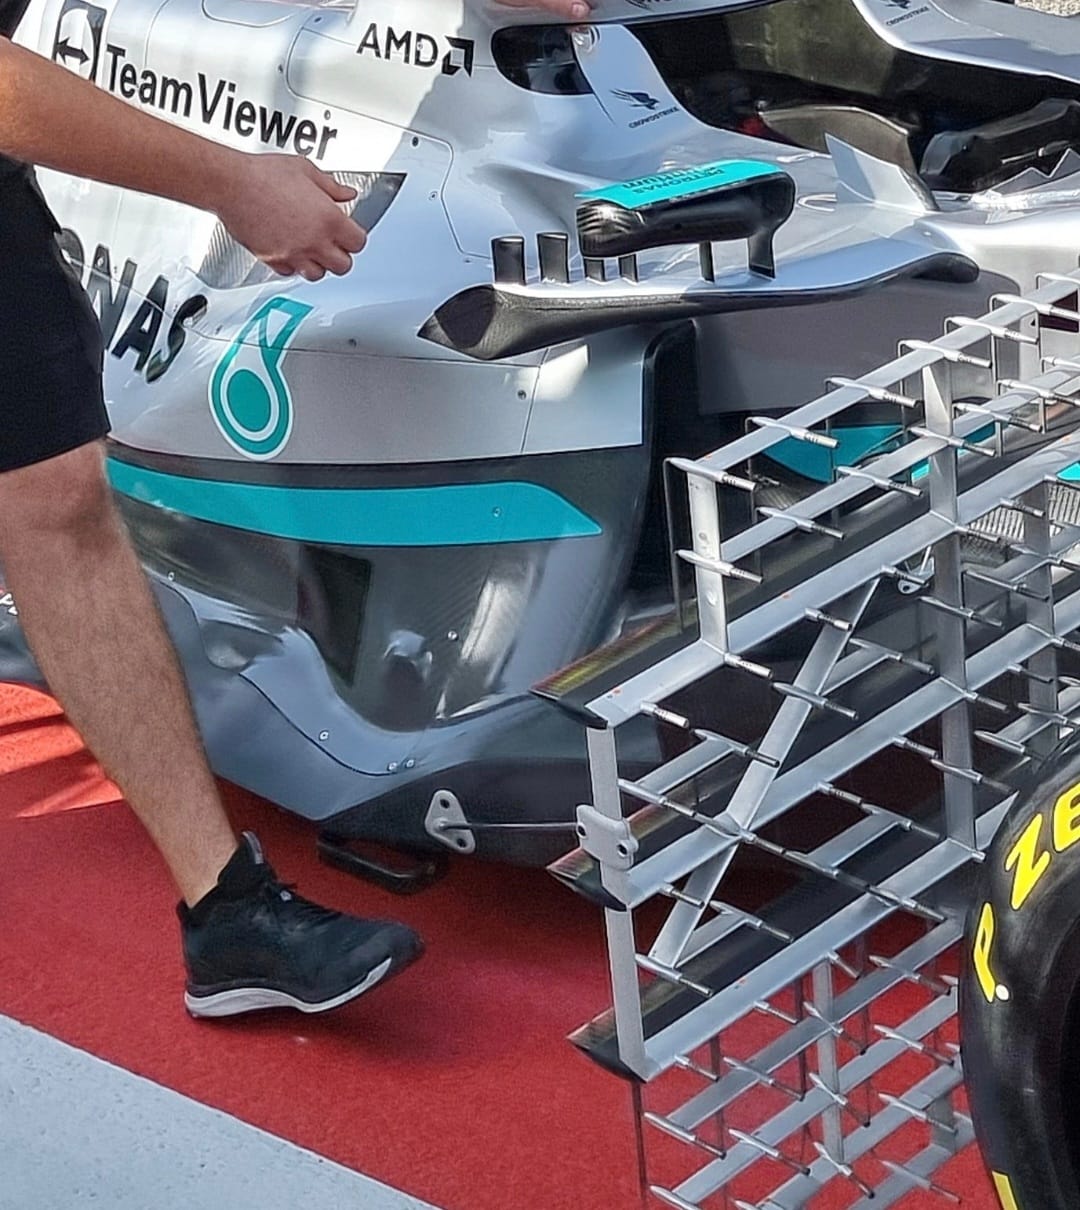 F1 | Tecnica: Mercedes W13, l'analisi di Paolo Filisetti delle modifiche di Sakhir [AUDIO]